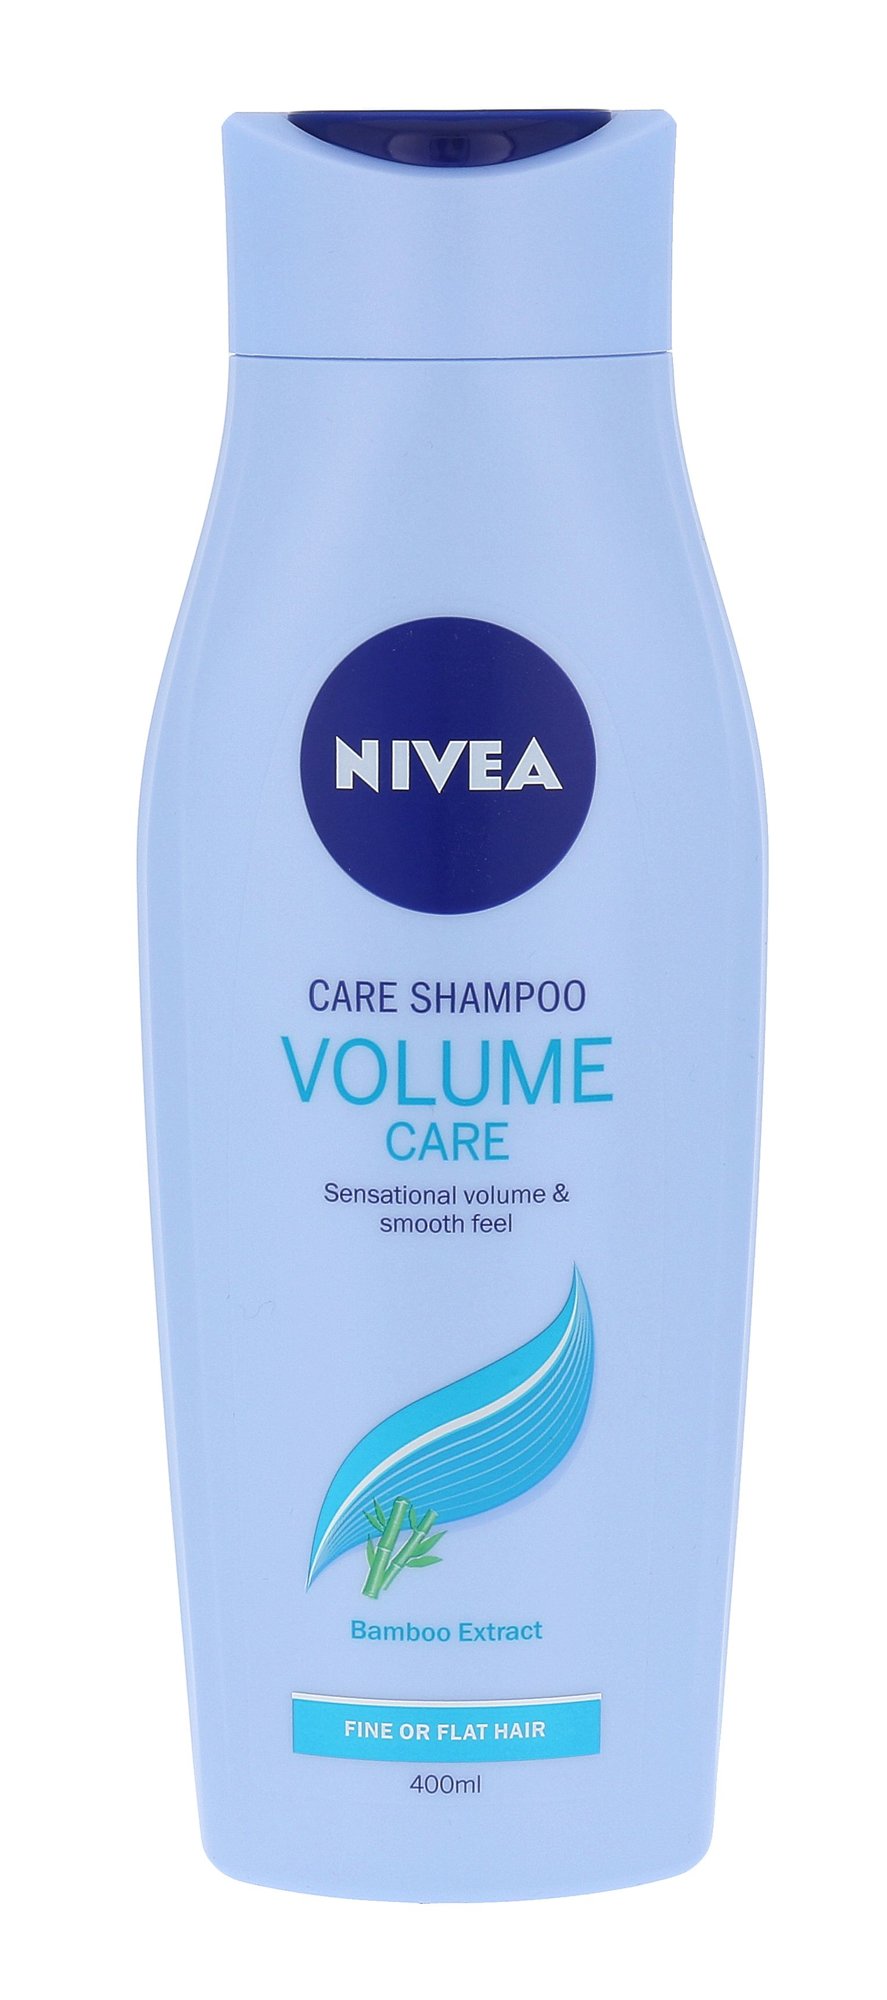 Nivea Volume Sensation Shampoo